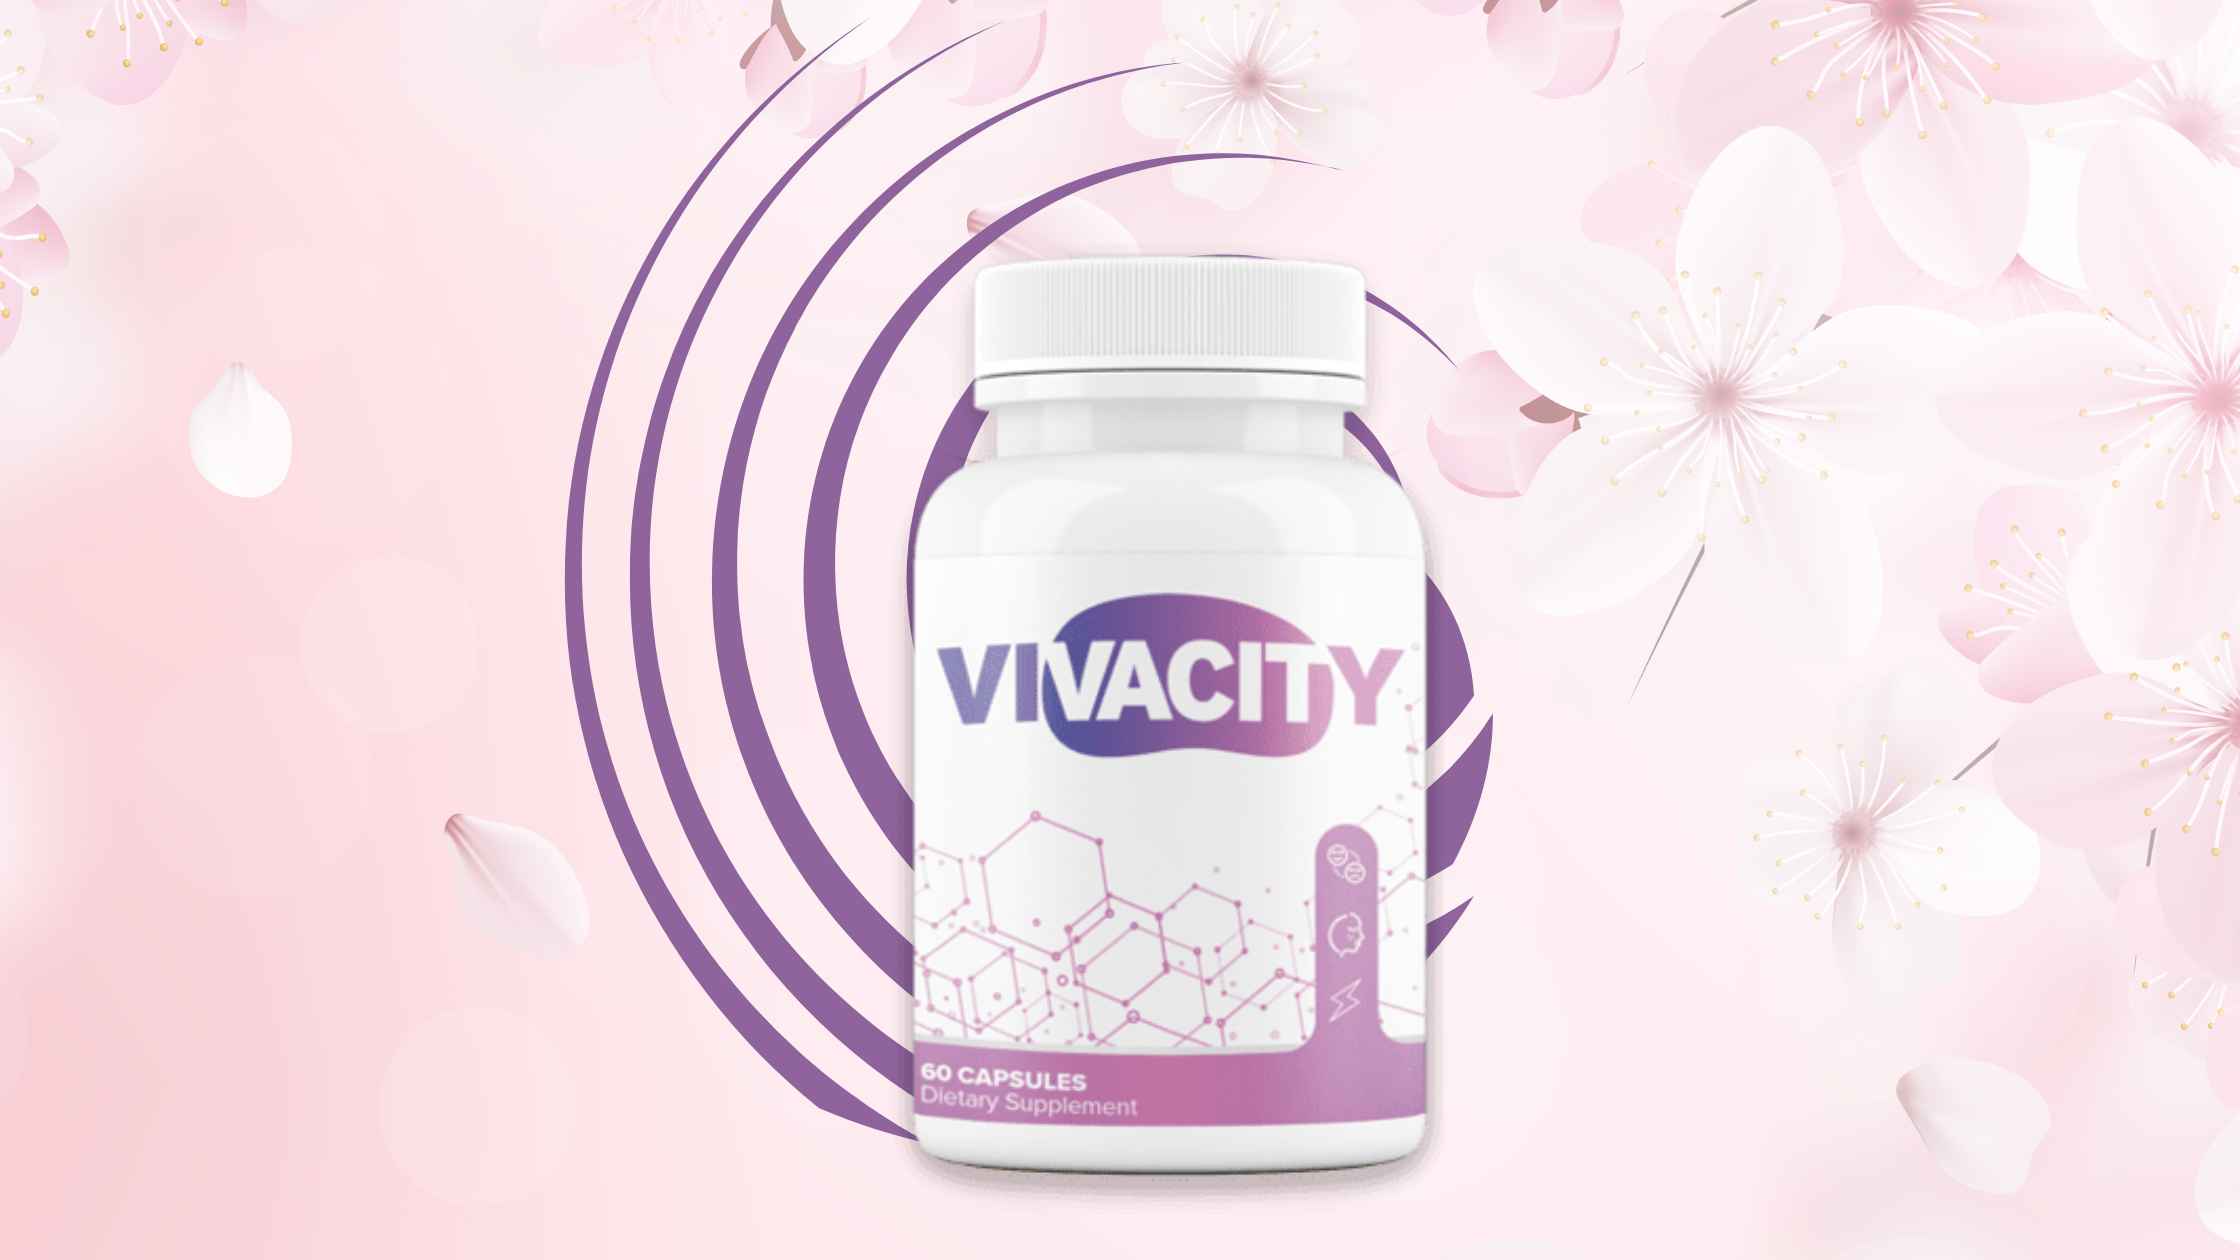 Vivacity Reviews – A Natural Formula For Healthy Weight Loss!